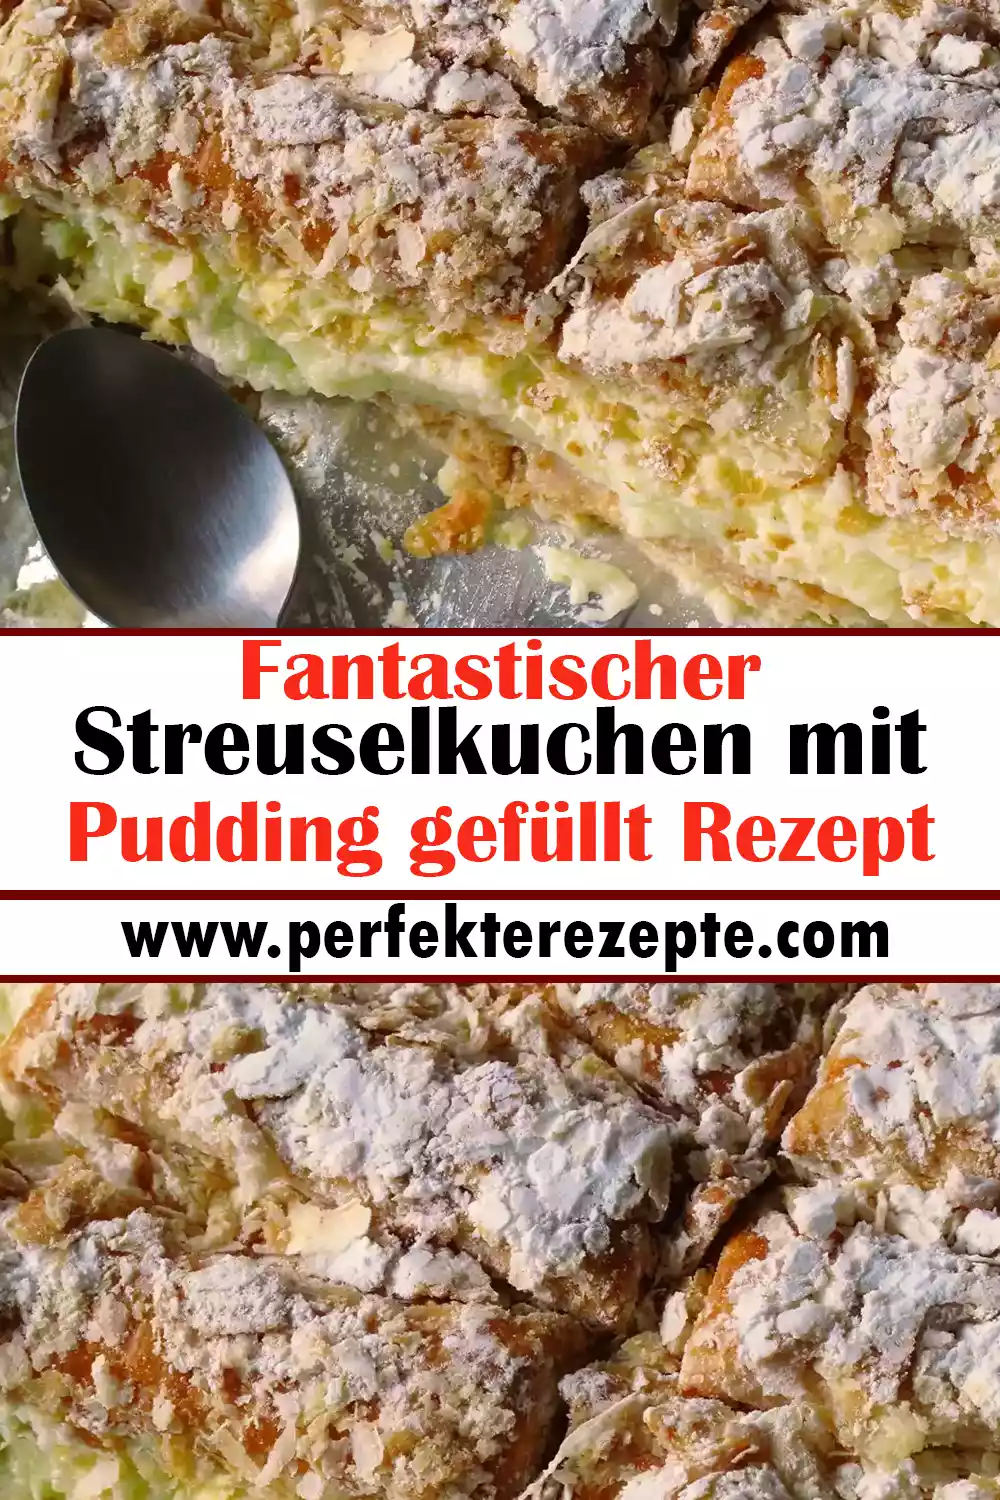 Fantastischer Streuselkuchen mit Pudding gefüllt Rezept